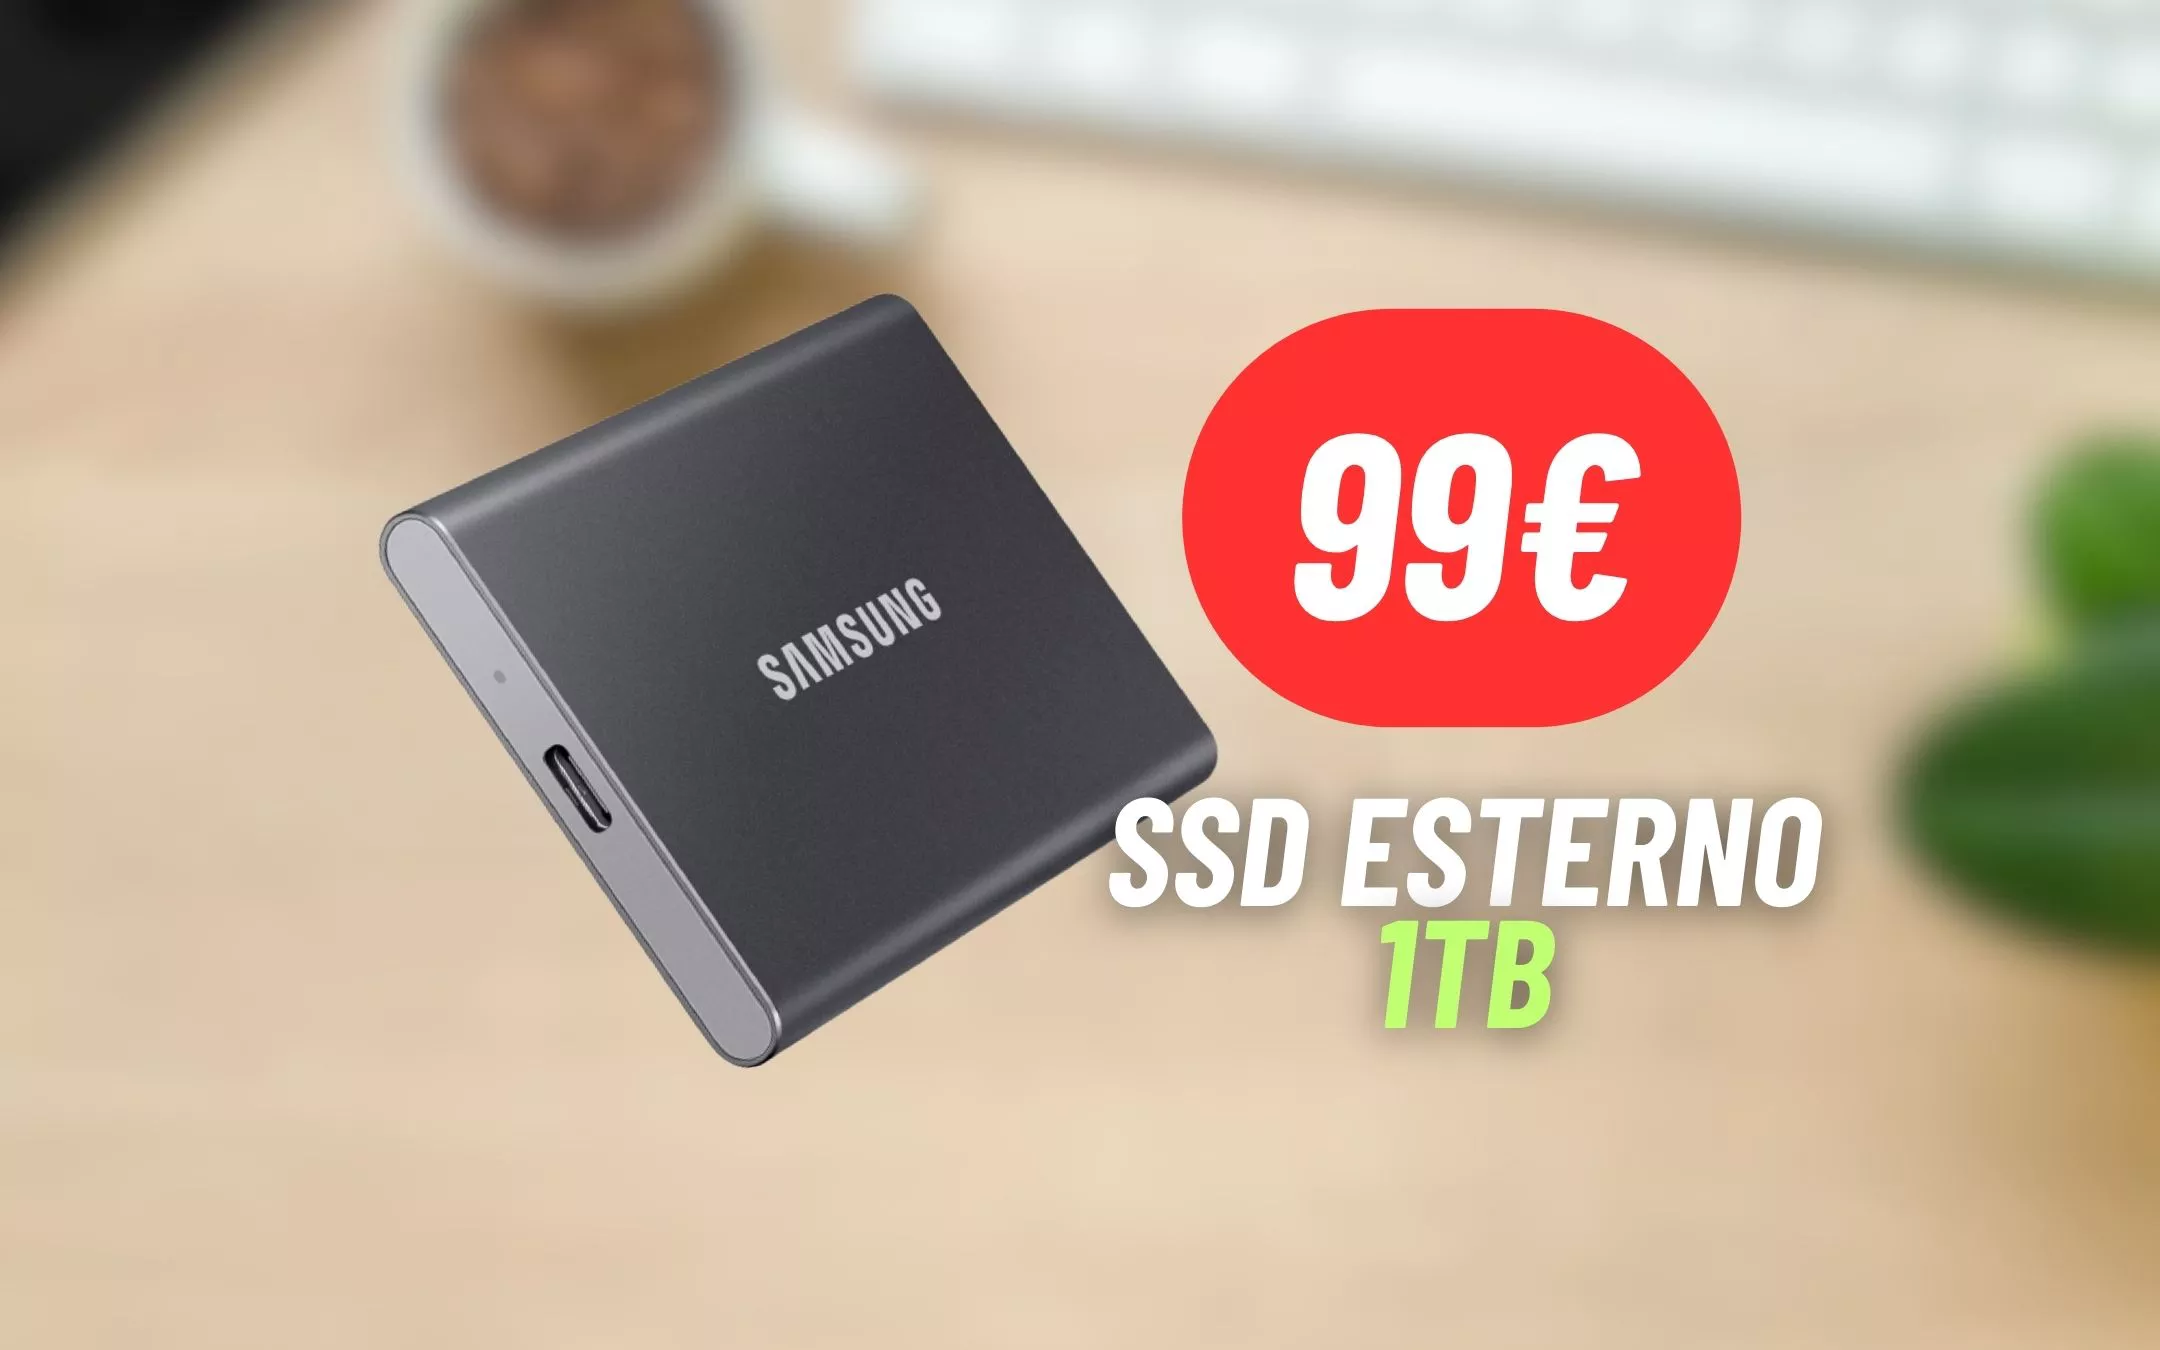 1TB di storage a soli 99€ con l’SSD  …